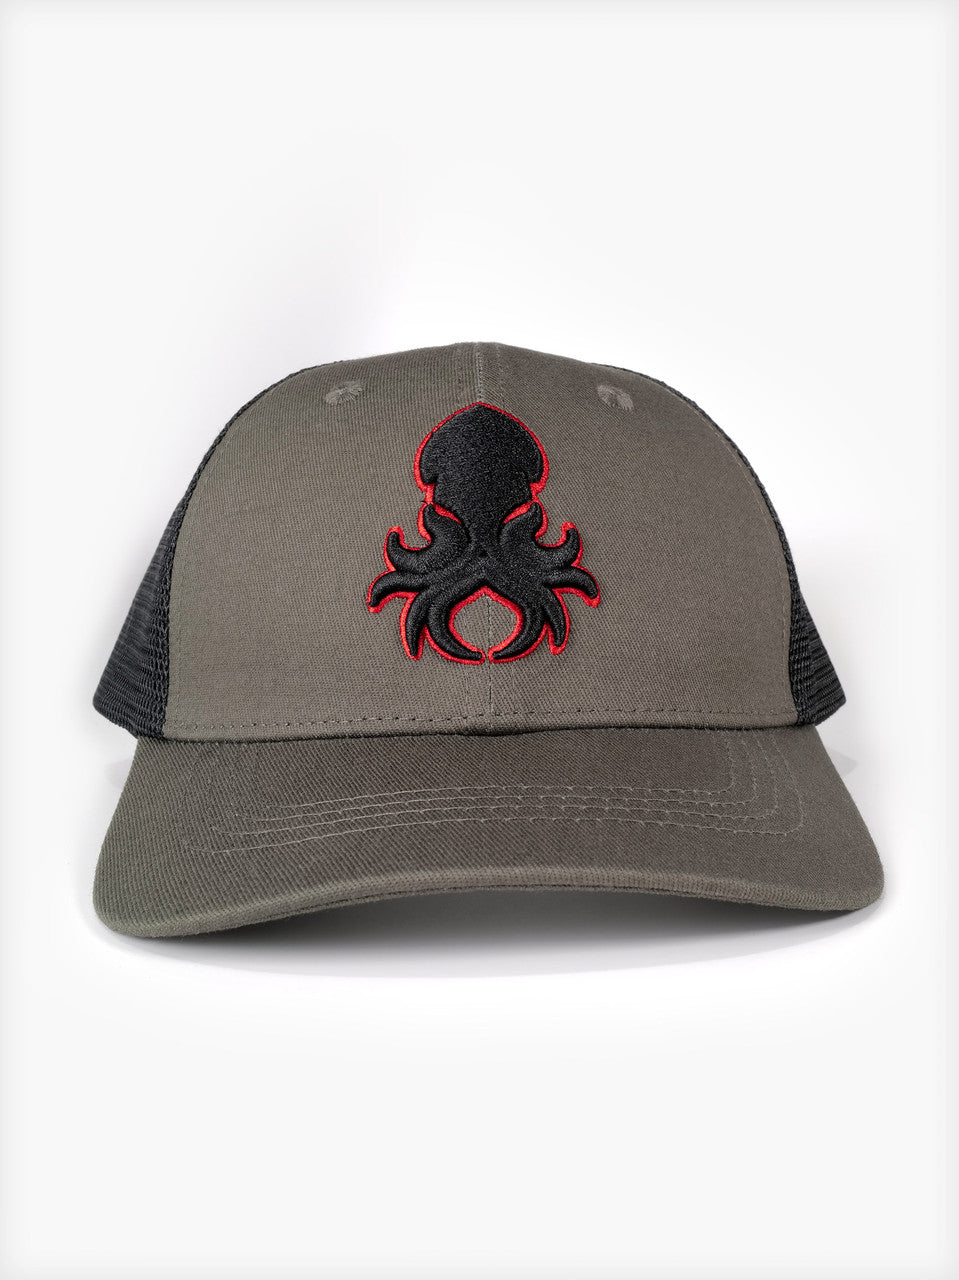 Kraken Logo Red Silhouette  Snapback Trucker Cap